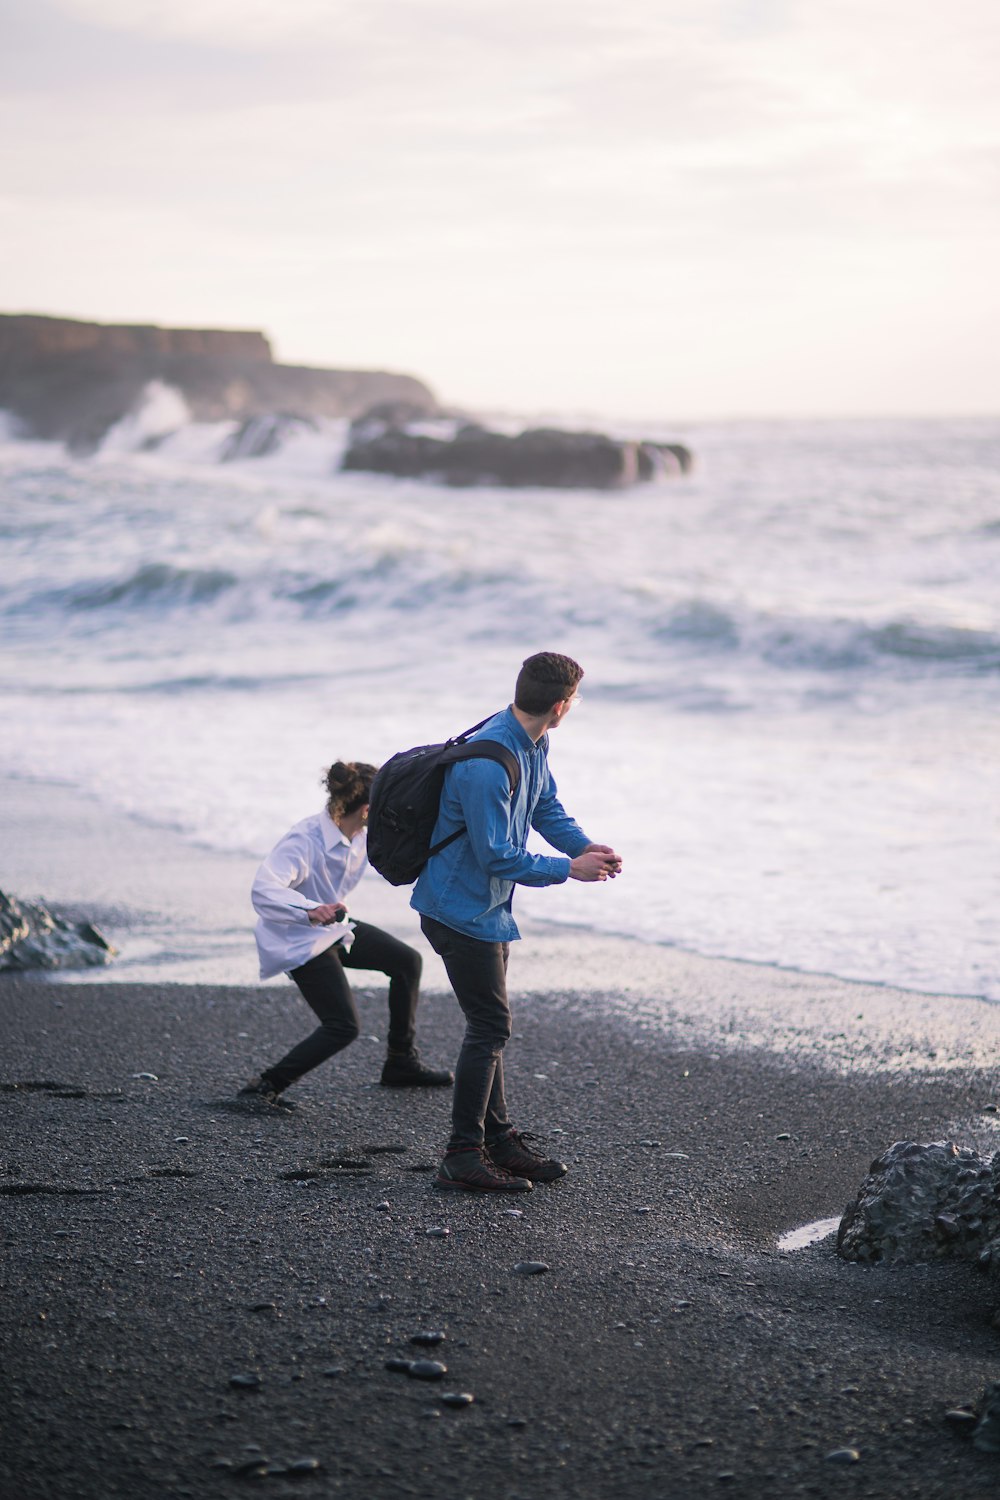 파란색 재킷과 검은 바지를 입은 남자가 낮 동안 해변을 걷고 있다